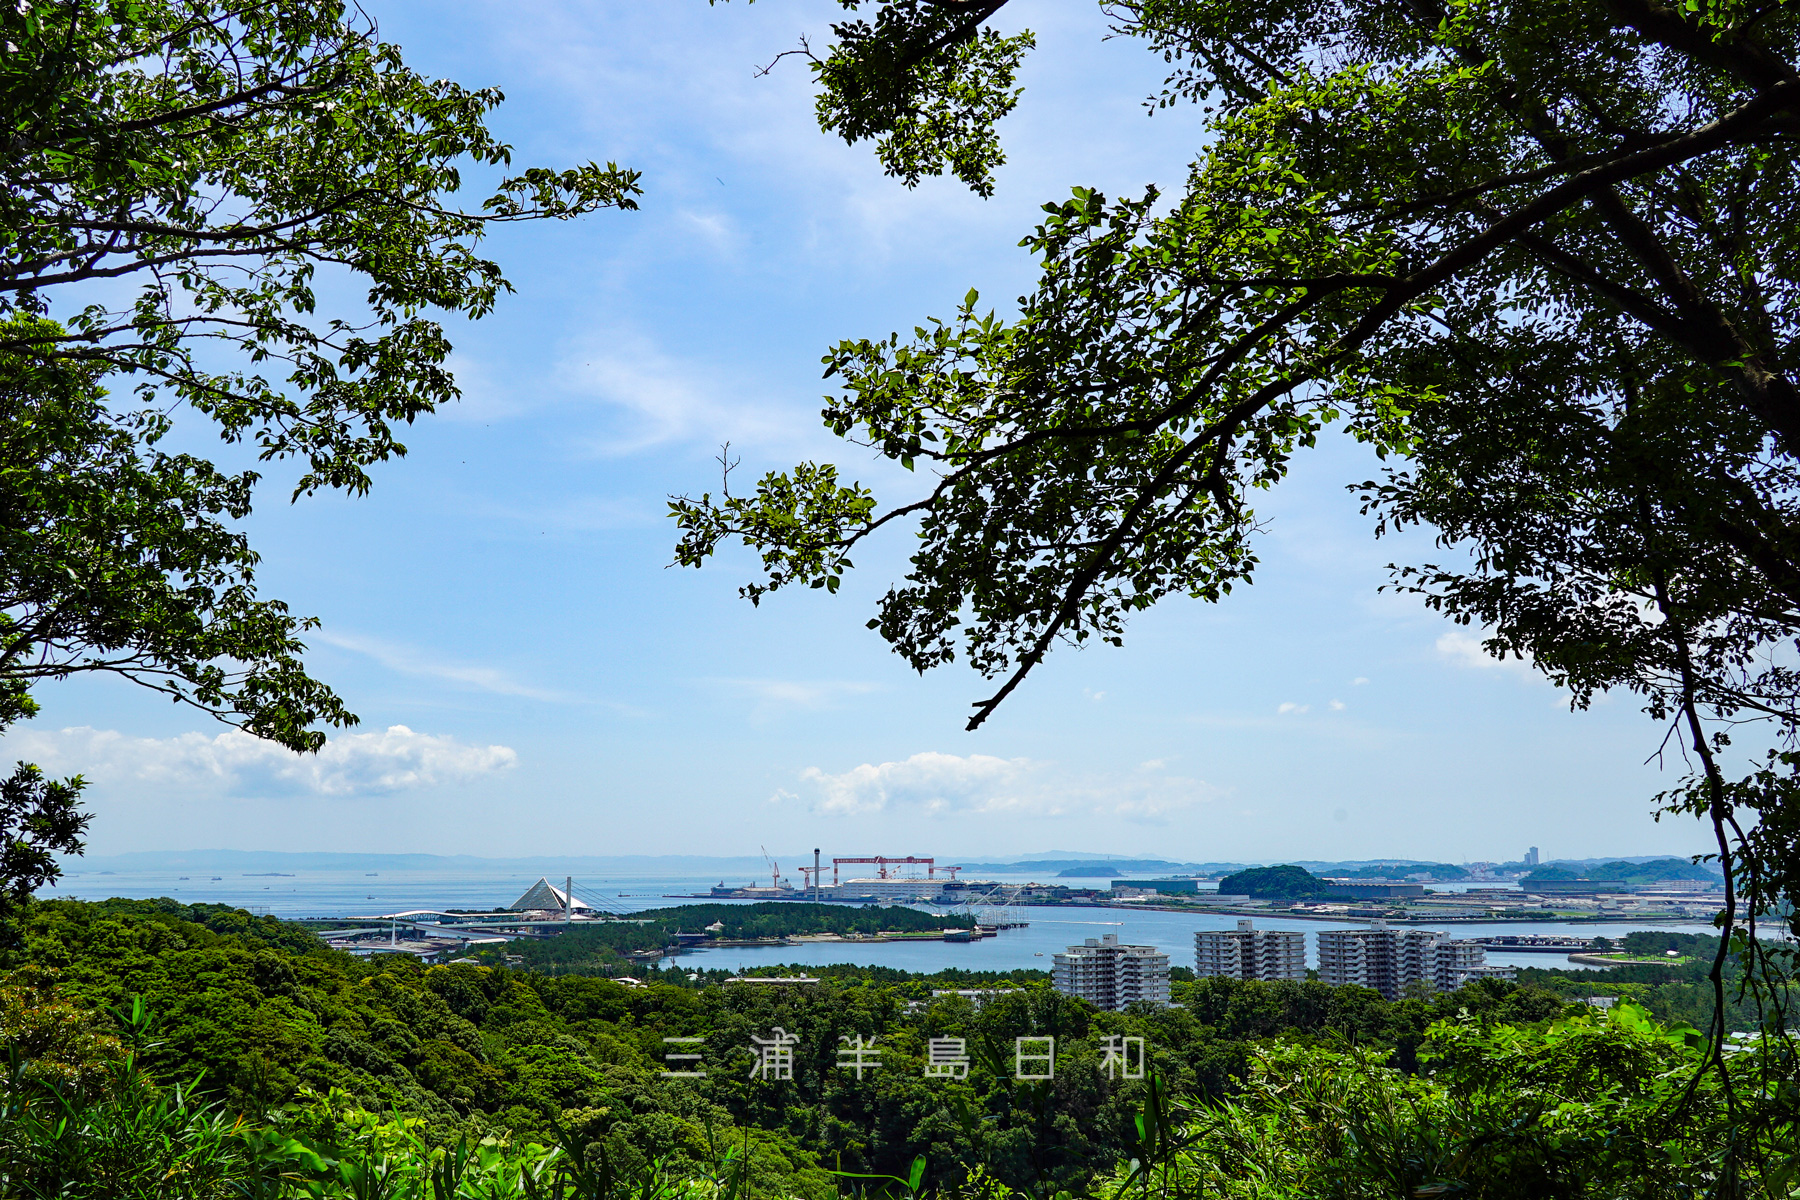 称名寺市民の森・八角堂広場から八景島、海の公園方面を望む（撮影日：2021.06.11）